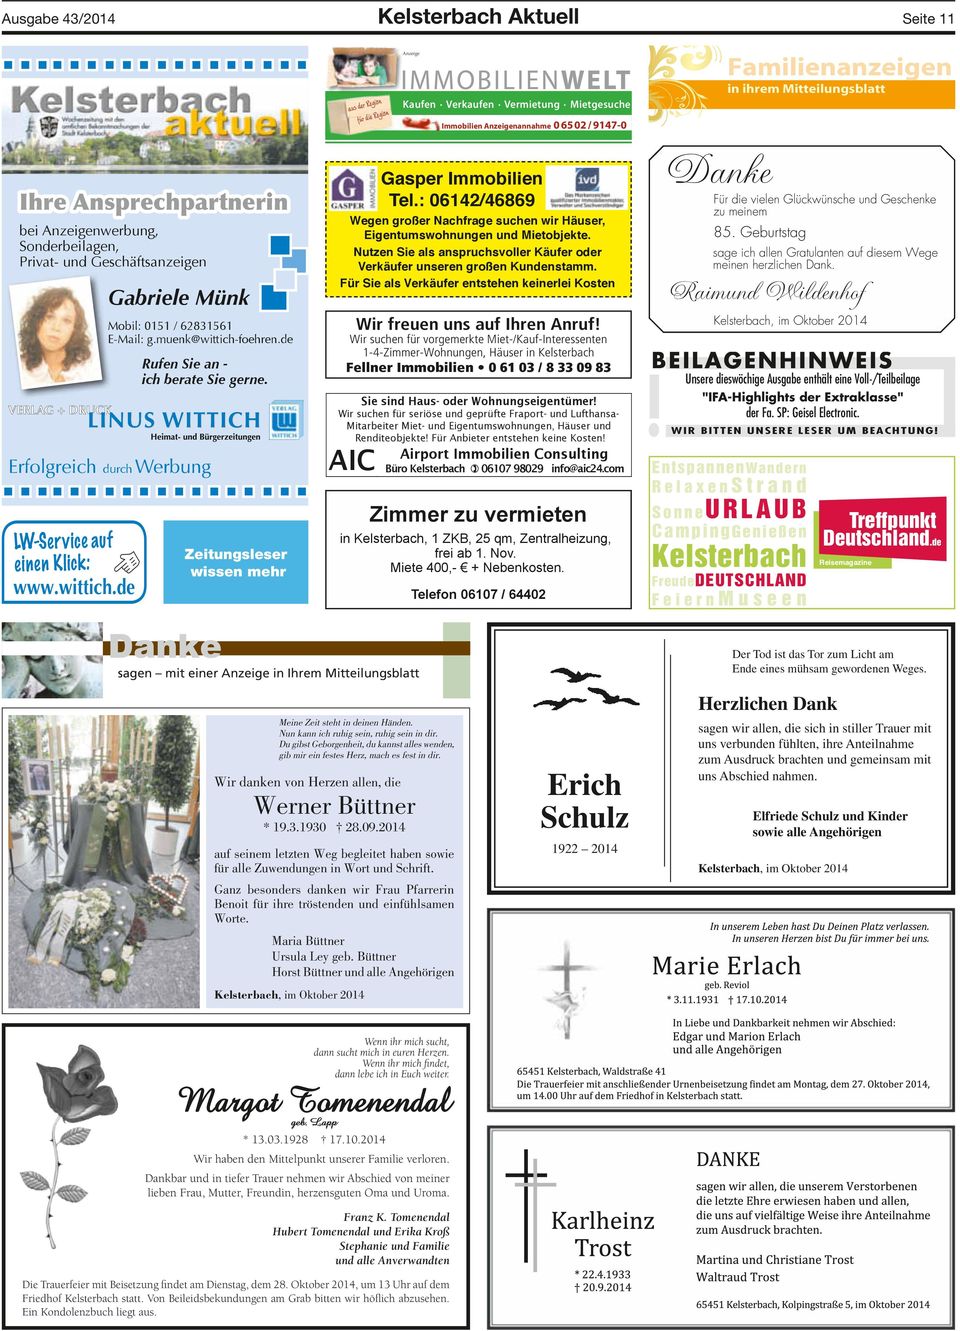 de Rufen Sie an - ich berate Sie gerne. Erfolgreich durch Werbung LW-Service auf einen Klick: www.wittich.de Zeitungsleser wissen mehr Gasper Immobilien Tel.